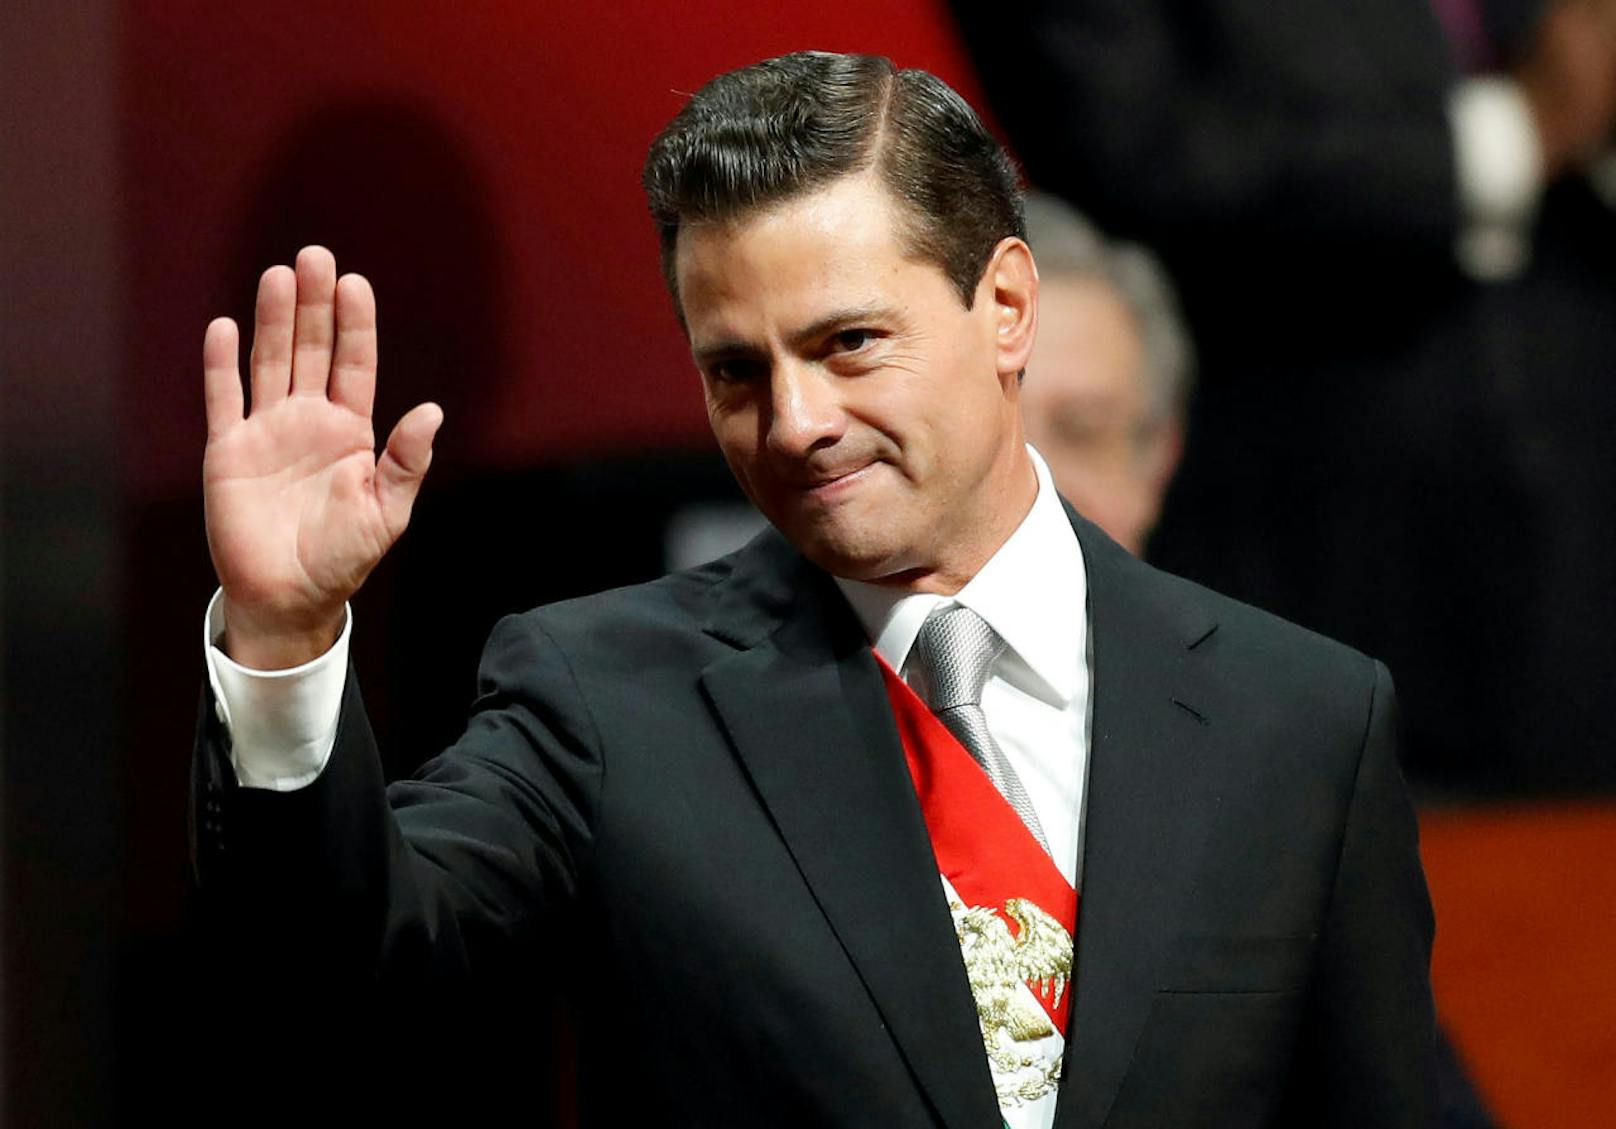 <b>Platz 19: Mexiko</b>
Der mexikanische Präsident Enrique Pena Nieto bekommt ebenfalls das Sechsfache eines mexikanischen Durchschnittsgehalt: <b>97.700 Euro</b> jährlich im Vergleich zu 15.500 Euro jährlich.